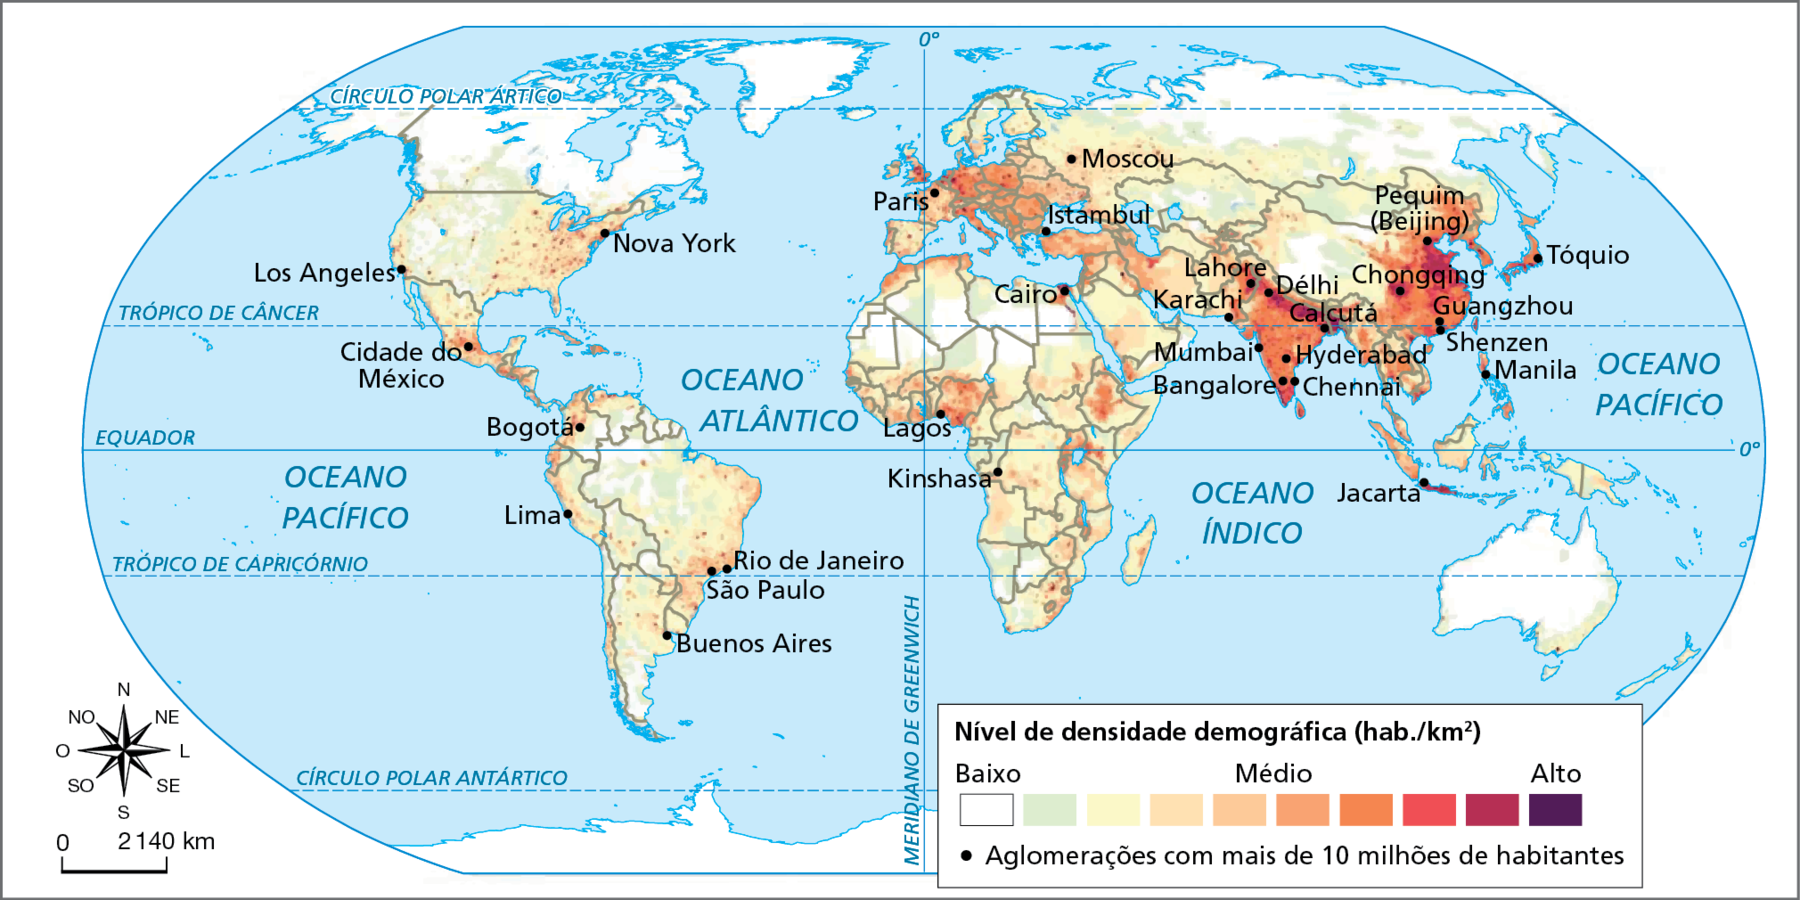 Mapa. Mundo: densidade demográfica, em habitantes por quilômetro quadrado – 2020. Planisfério demarcando as áreas com diferentes níveis de densidade demográfica, destacadas em tonalidades de cor que variam do mais fraco (áreas com baixa densidade), para o mais forte (áreas com elevada densidade).    e localizando as aglomerações com mais de 10 milhões de habitantes.  As regiões do planeta que têm baixa densidade demográfica são aquelas formadas, principalmente, por desertos, como Saara, na África, e o Deserto Australiano; as regiões congeladas, como a Sibéria, na Rússia, e o norte do Canadá; ou regiões densamente florestadas, como a Amazônia, na América do Sul.  As regiões mais densamente povoadas se concentram no norte da Índia e na porção leste da China, principalmente na sua faixa litorânea.  No Brasil, as porções mais densamente povoadas do território se concentram na faixa litorânea; já no interior, e especialmente na porção central, os pontos de densidades mais elevadas estão restritos às capitais de unidades federativas e sua áreas de entorno.   No mundo, as aglomerações com mais de 10 milhões de habitantes se localizam justamente nas regiões que apresentam densidades demográficas mais elevadas em cada continente: América: Rio de Janeiro e São Paulo (Brasil); Buenos Aires (Argentina); Lima (Peru); Bogotá (Colômbia); Cidade do México (México); Los Angeles e Nova York (Estados Unidos). Europa: Paris (França); Istambul (Turquia); Moscou (Rússia). África: Kinshasa (República Democrática do Congo), Lagos (Nigéria) e Cairo (Egito); Ásia: Lahore e Karachi (Paquistão); Délhi, Calcutá, Mumbai, Bangalore, Chennai e Hyderabad (Índia); Jacarta (Indonésia); Manila (Filipinas); Shenzen, Guangzhou, Chongqing e Pequim (Beijing) (China); Tóquio (Japão).  Na parte inferior do mapa, à esquerda, rosa dos ventos e escala de 0 a 2.140 quilômetros.